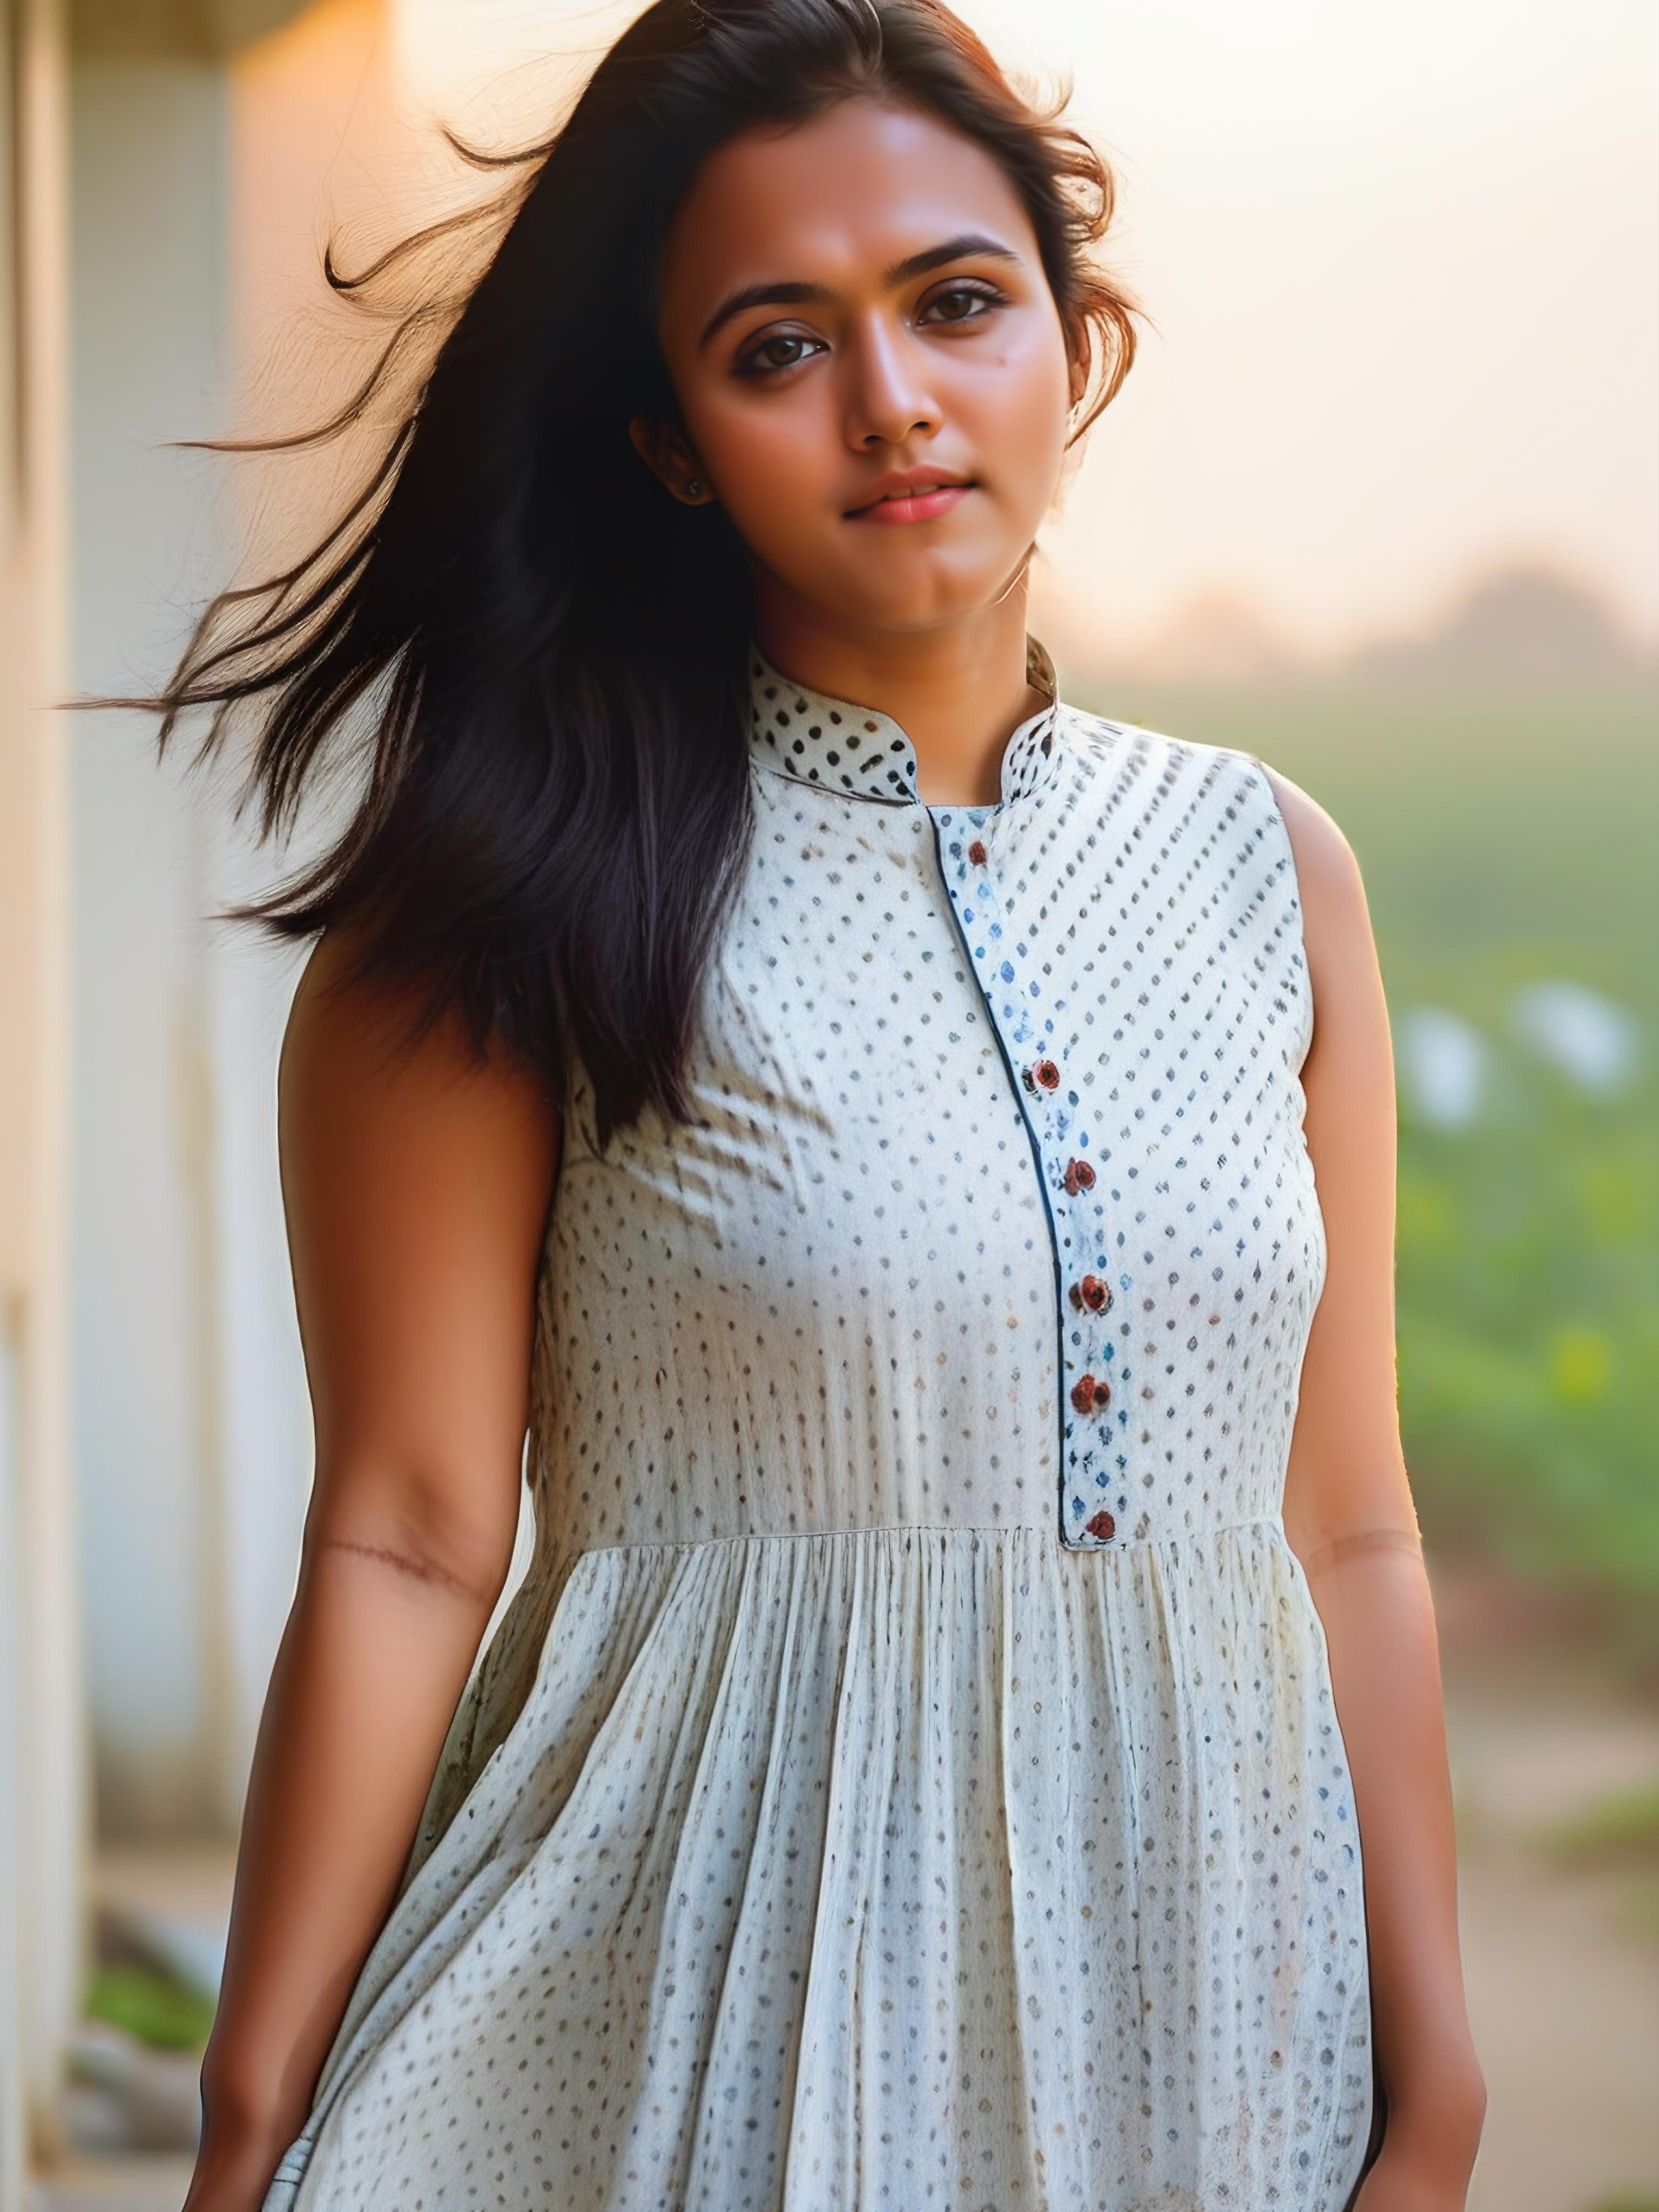 Aparna Das - Indian Actress (SDXL) image by Desi_Cafe